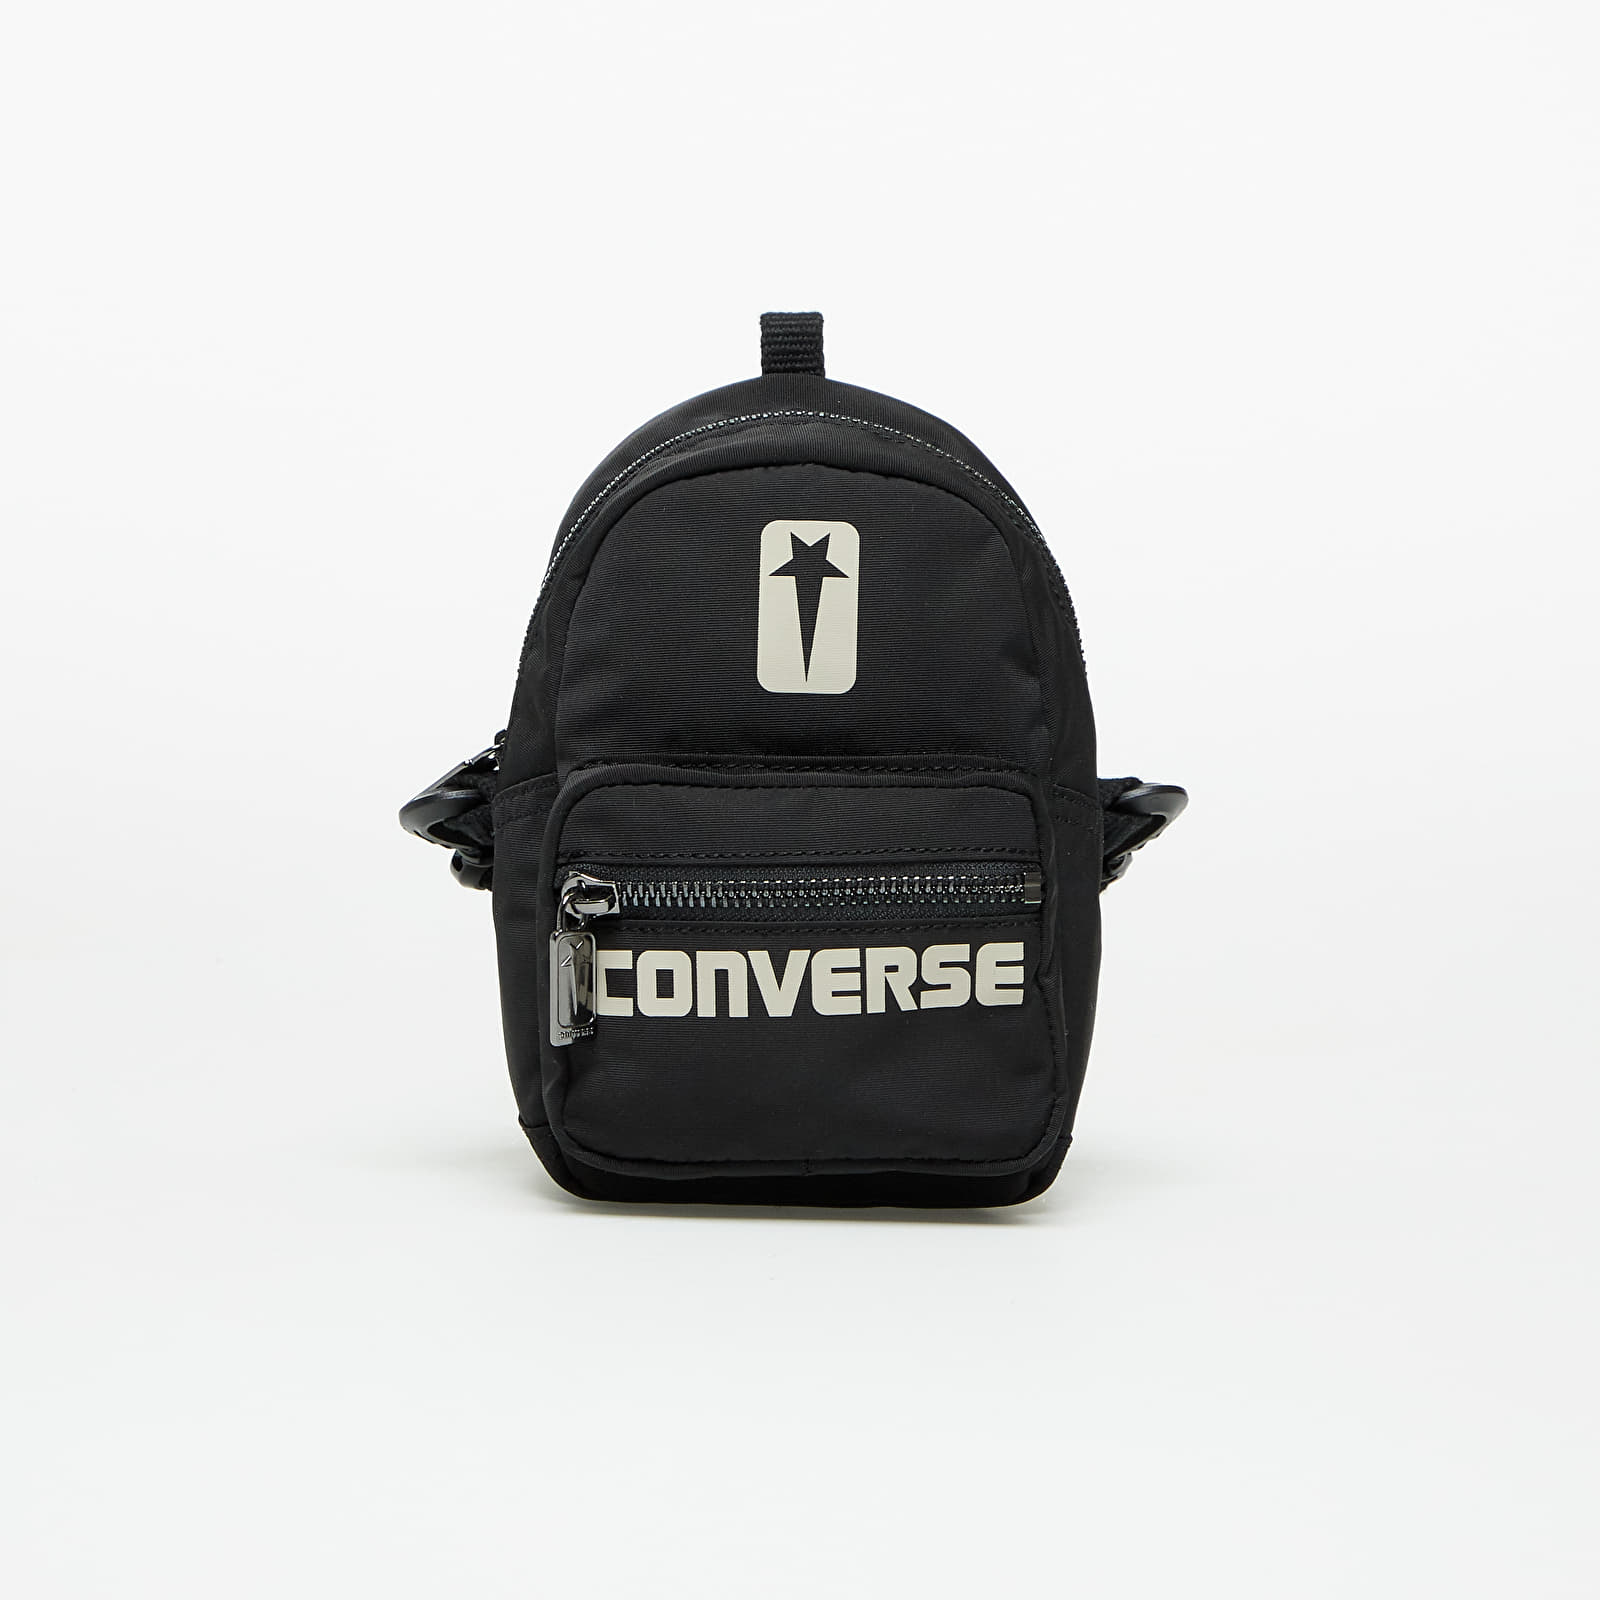 Bandoleras Converse x Rick Owens DRKSHDW Mini Go Backpack Black/ Pelican